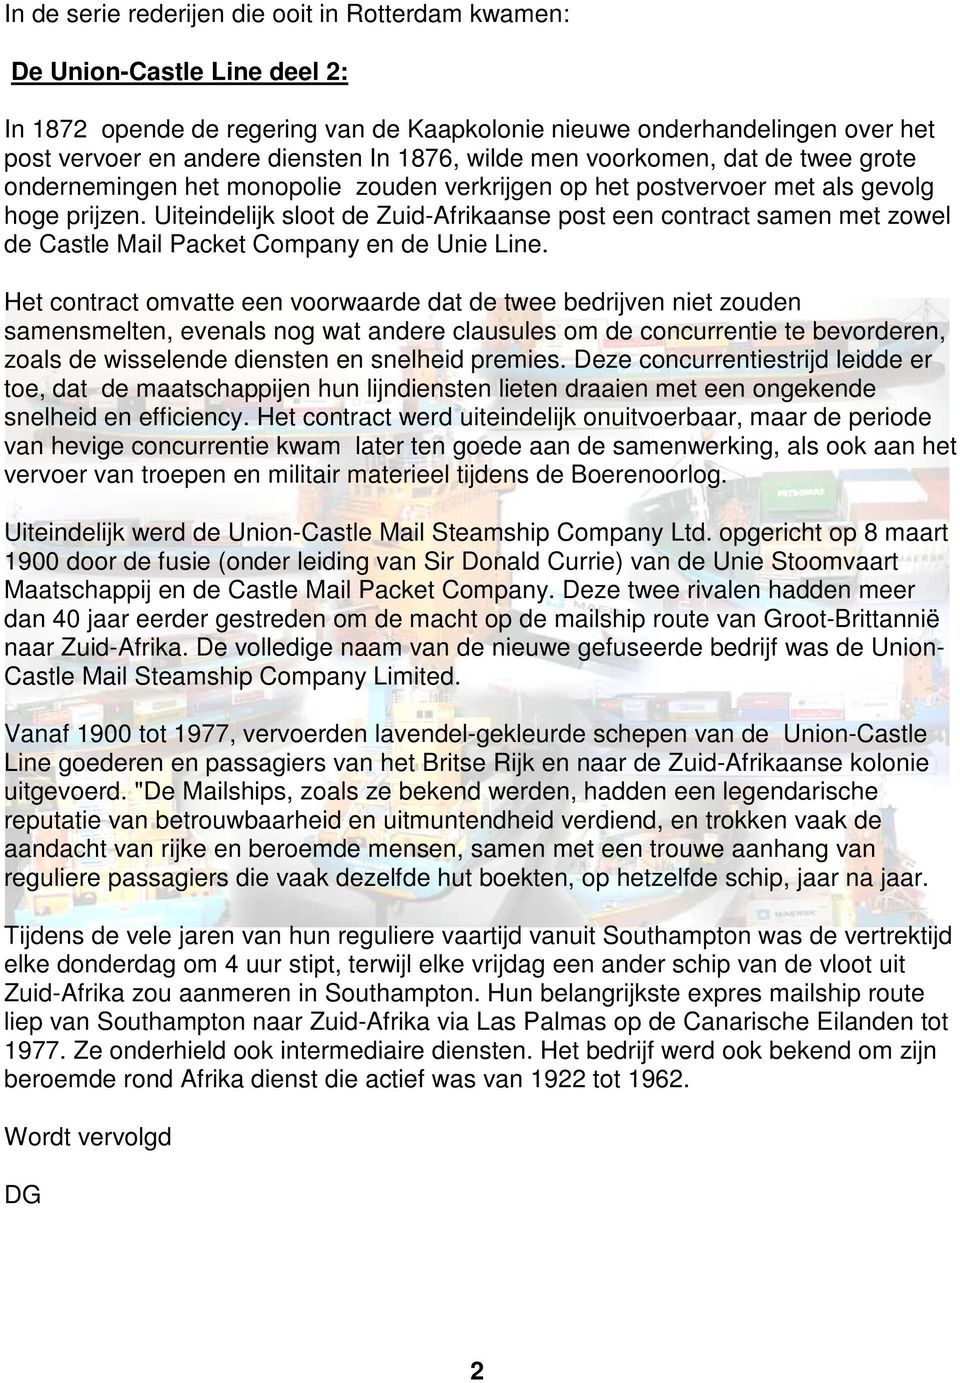 Uiteindelijk sloot de Zuid-Afrikaanse post een contract samen met zowel de Castle Mail Packet Company en de Unie Line.